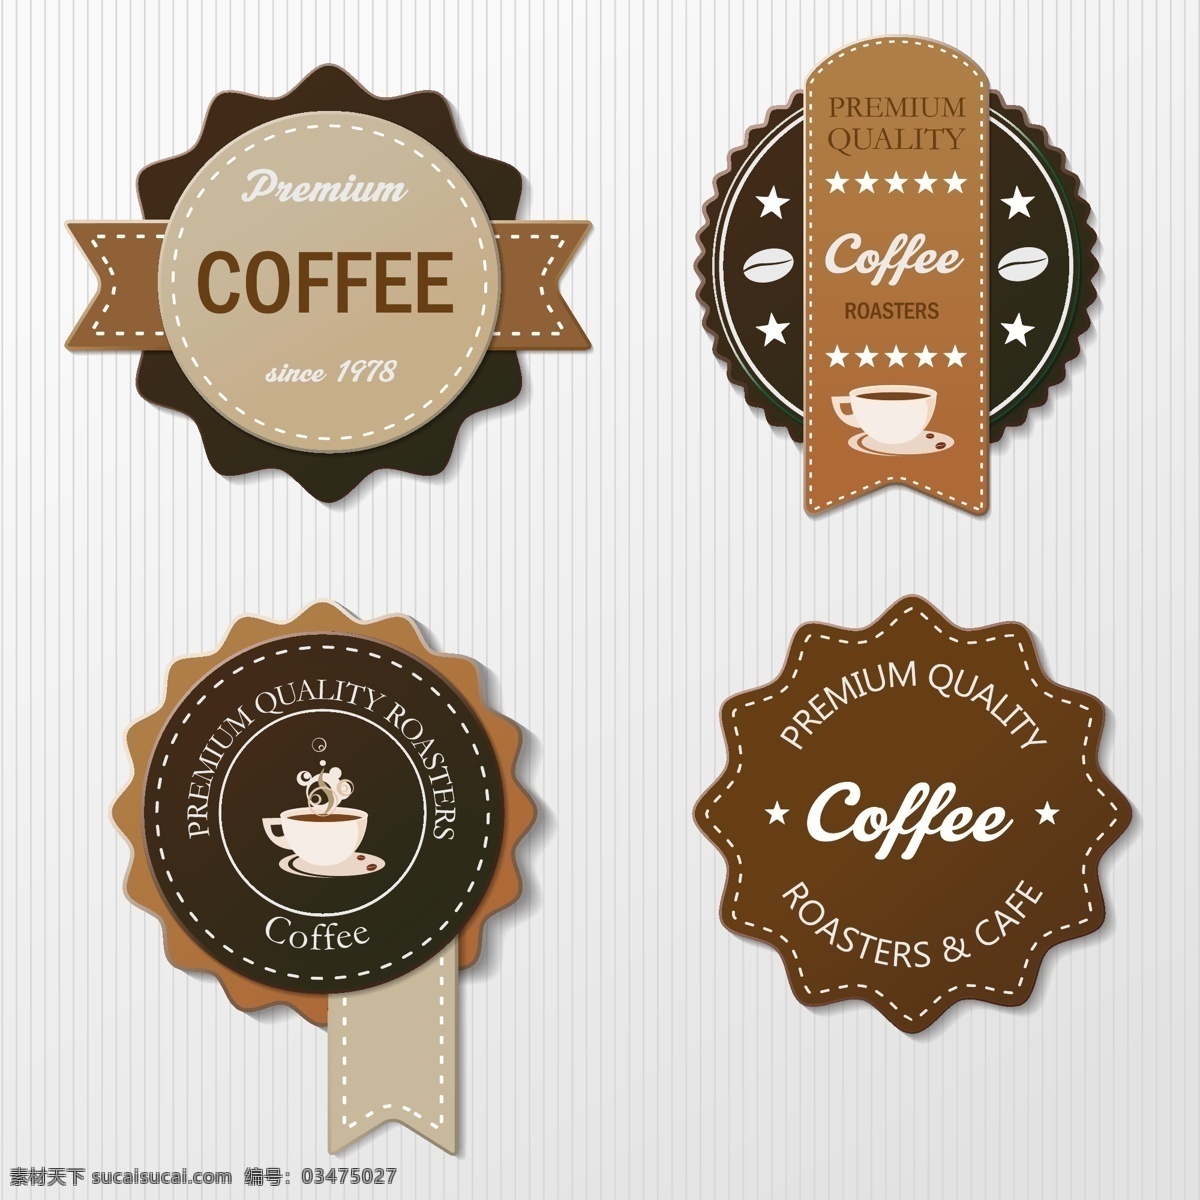 咖啡包装标贴 咖啡标志 咖啡图标 咖啡标签 咖啡标贴 咖啡包装贴纸 餐饮美食 生活百科 矢量素材 白色